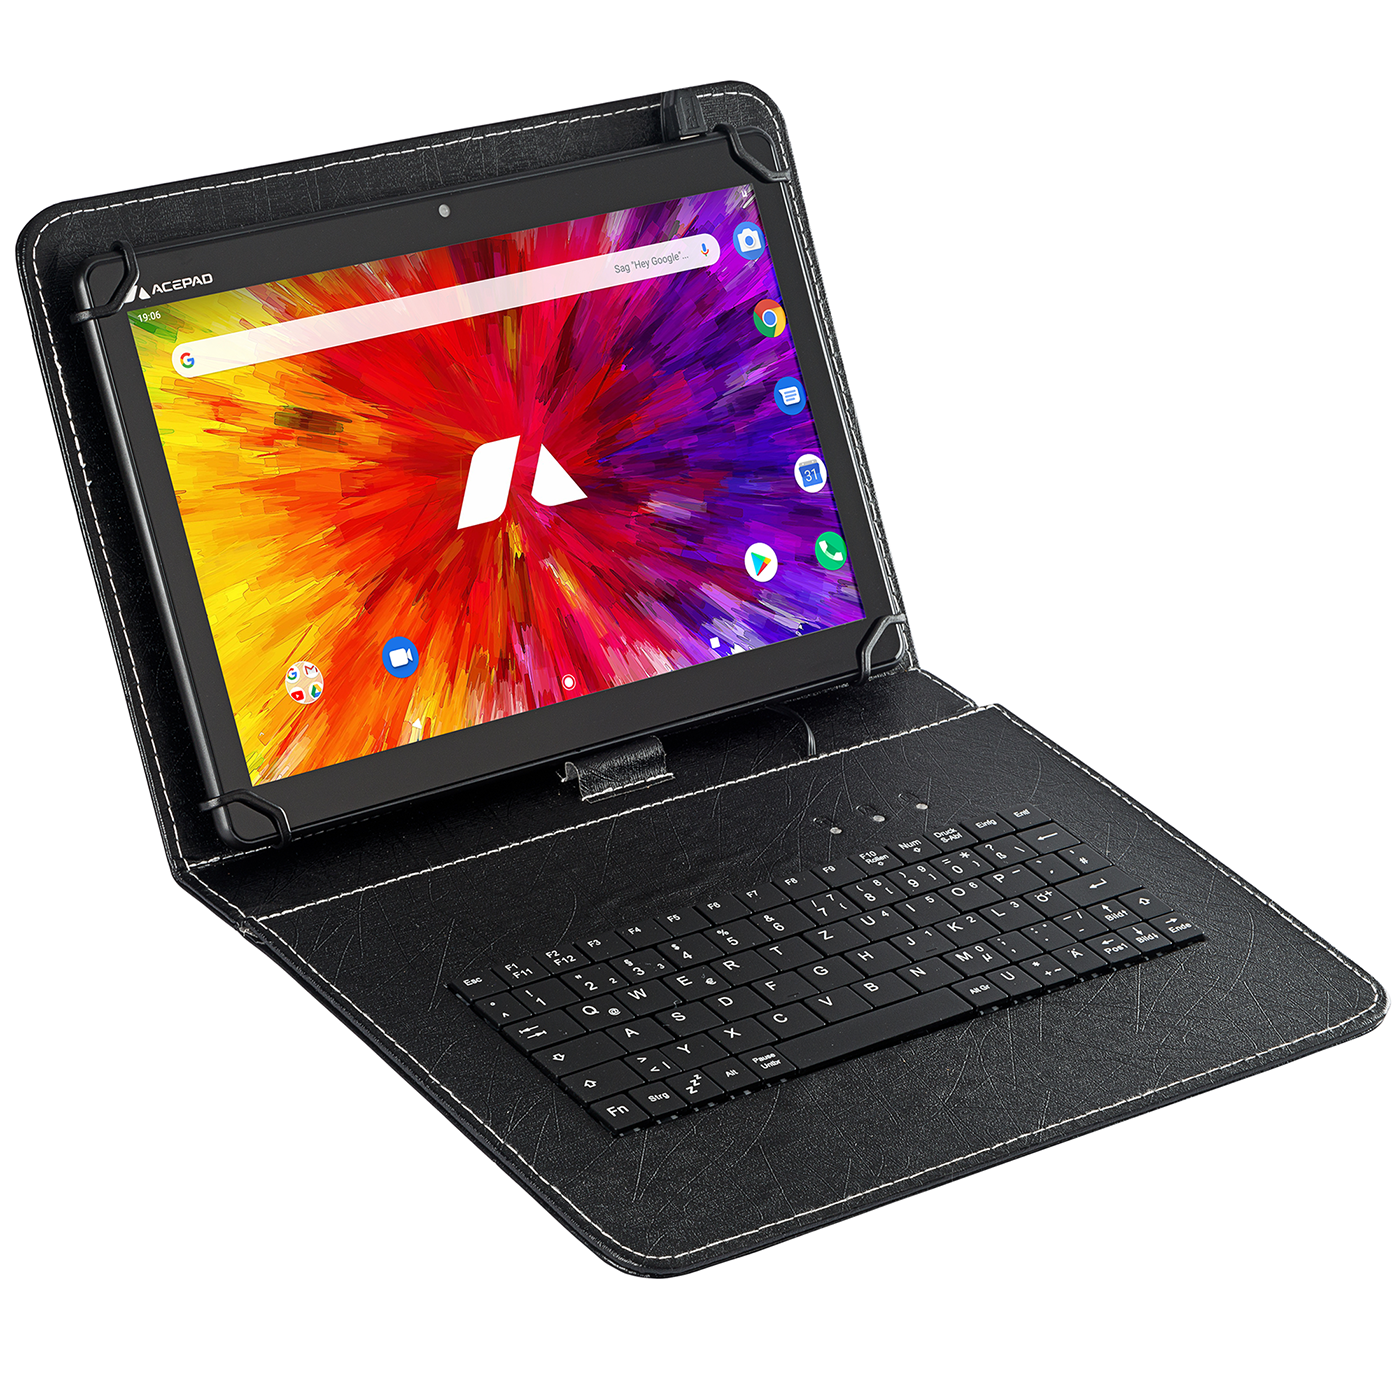 ACEPAD A130T, Octa-Core, 10,1 GB, Tastatur, Schwarz Tablet RAM, 64 LTE, mit Zoll, 4GB